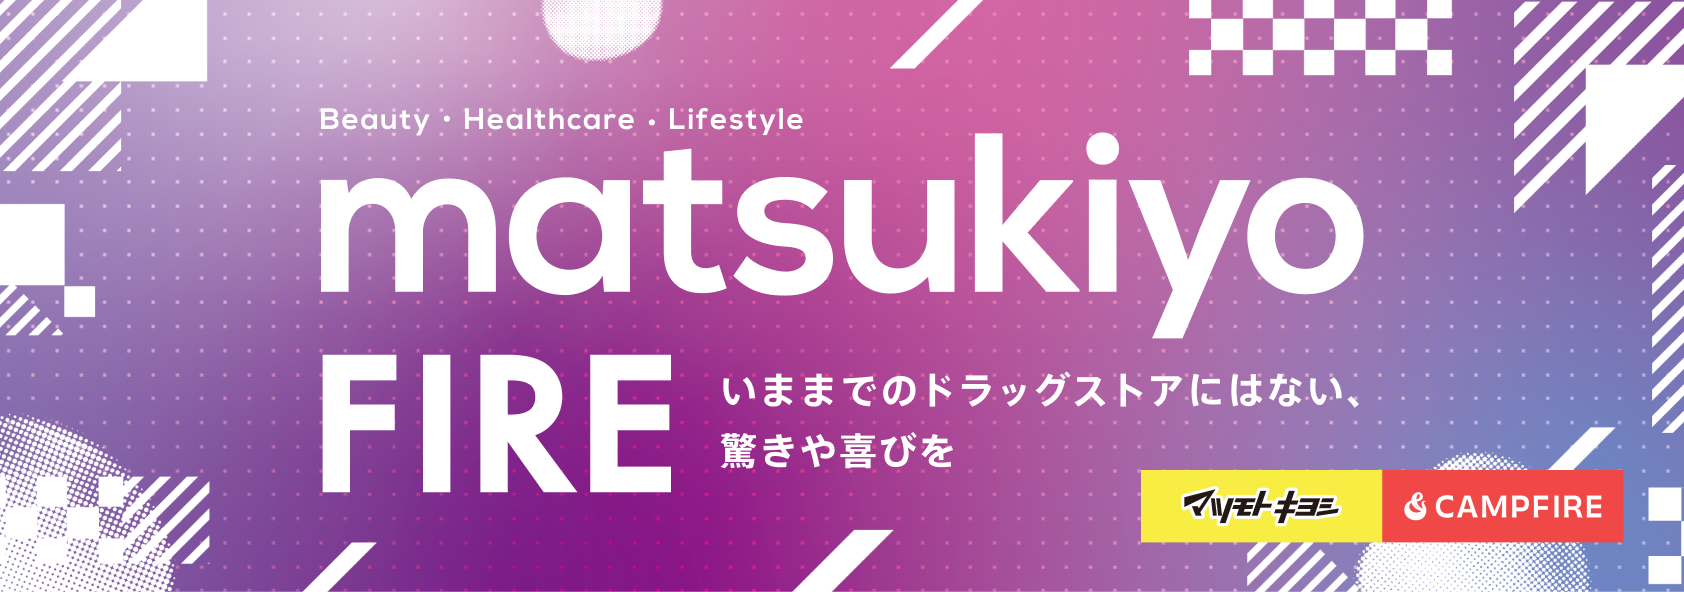 form_matsukiyofire